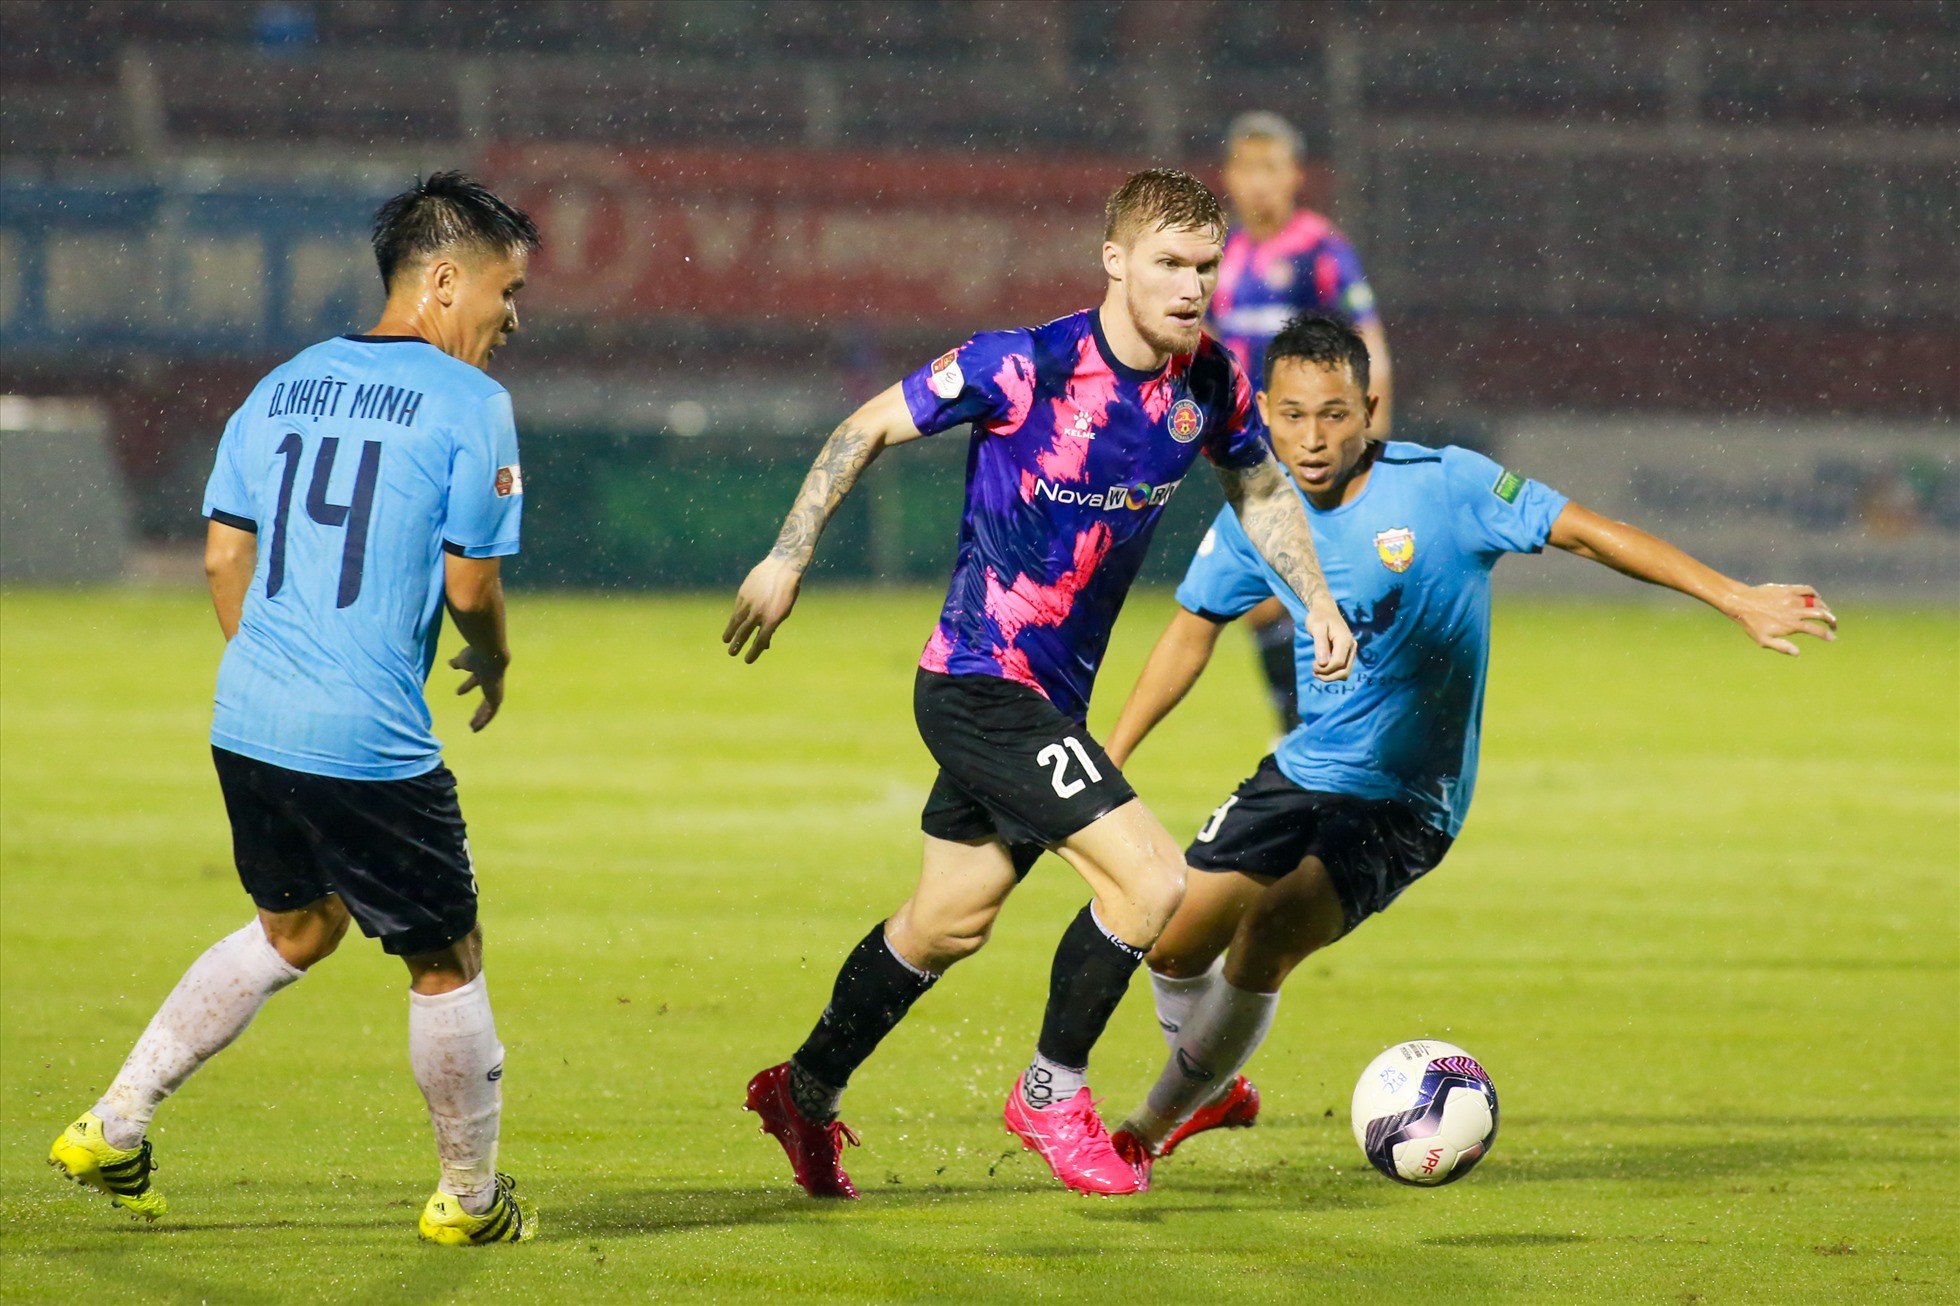 Hồng Lĩnh Hà Tĩnh đã thất bại cả 2 lượt khi đối đầu Sài Gòn ở V.League 2022. Ảnh: Thanh Vũ